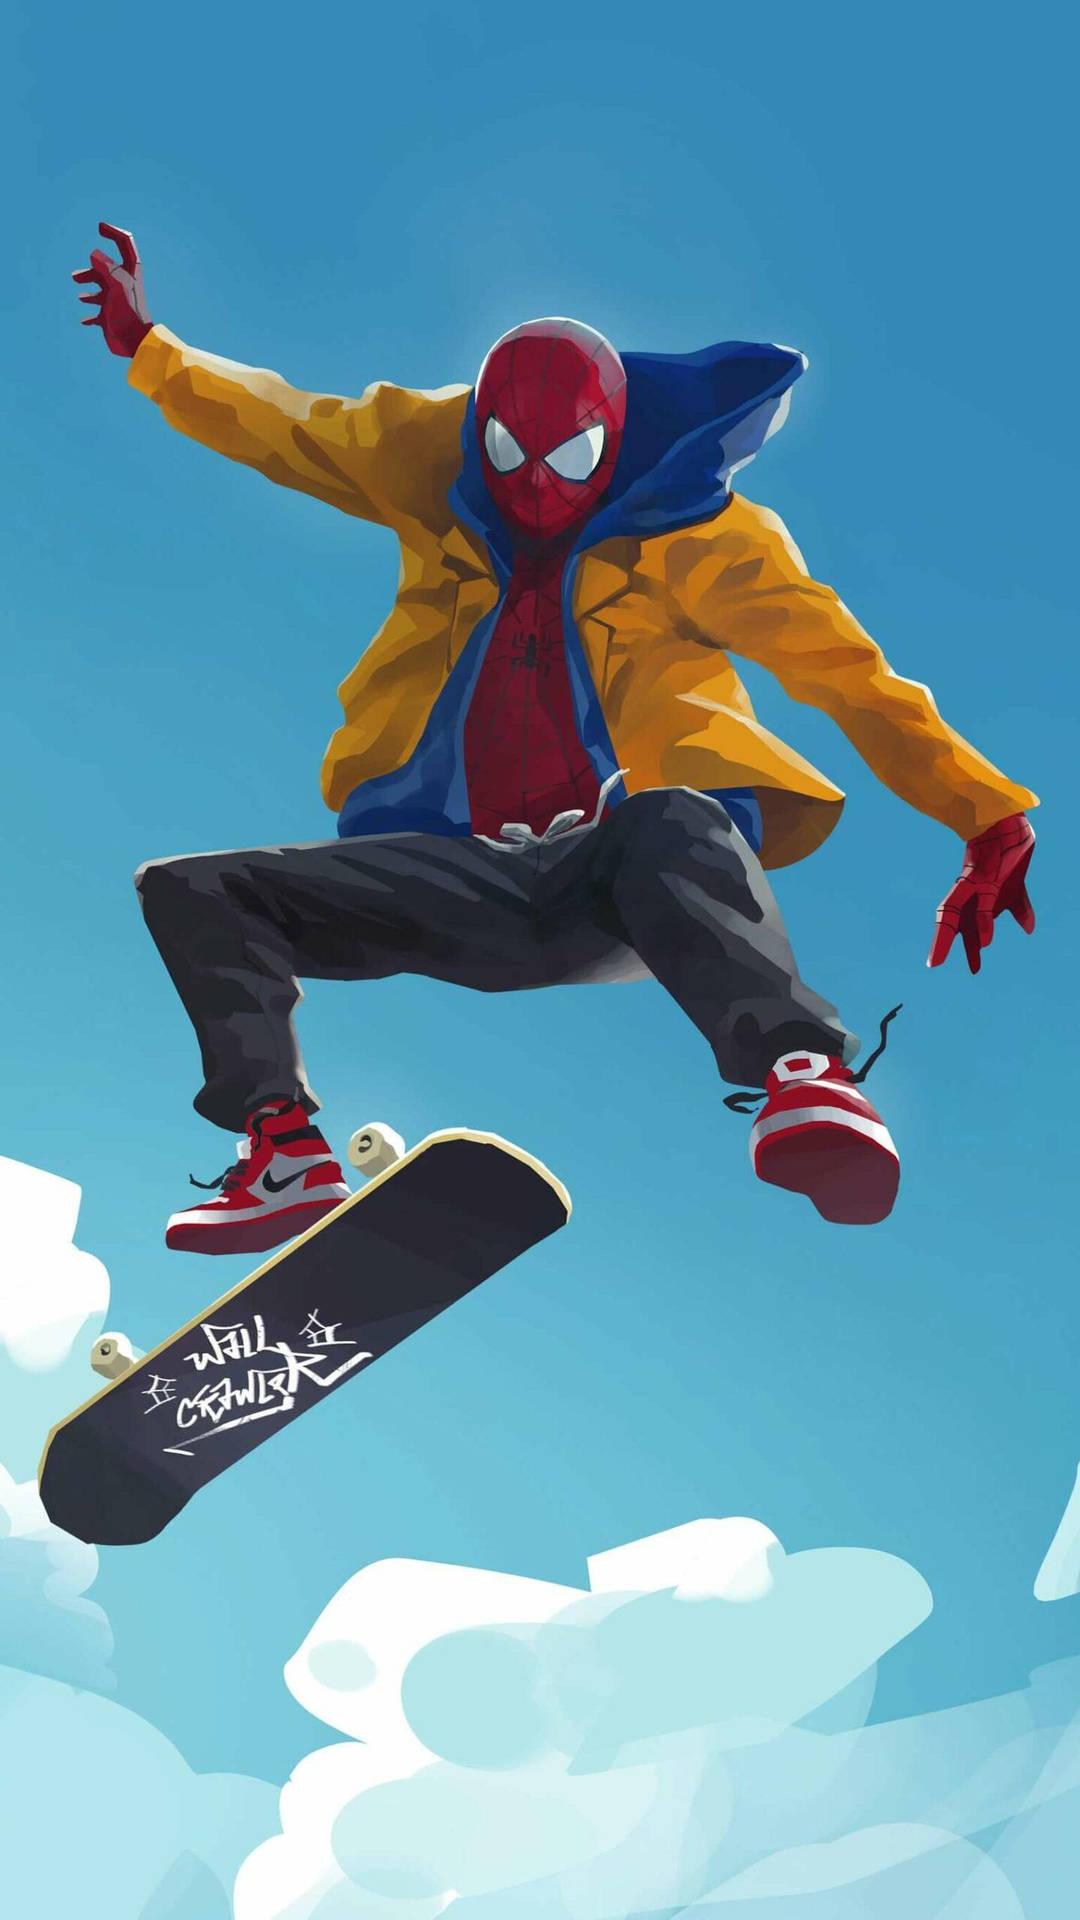 Aesthetic Spider Man skater boy wallpaper